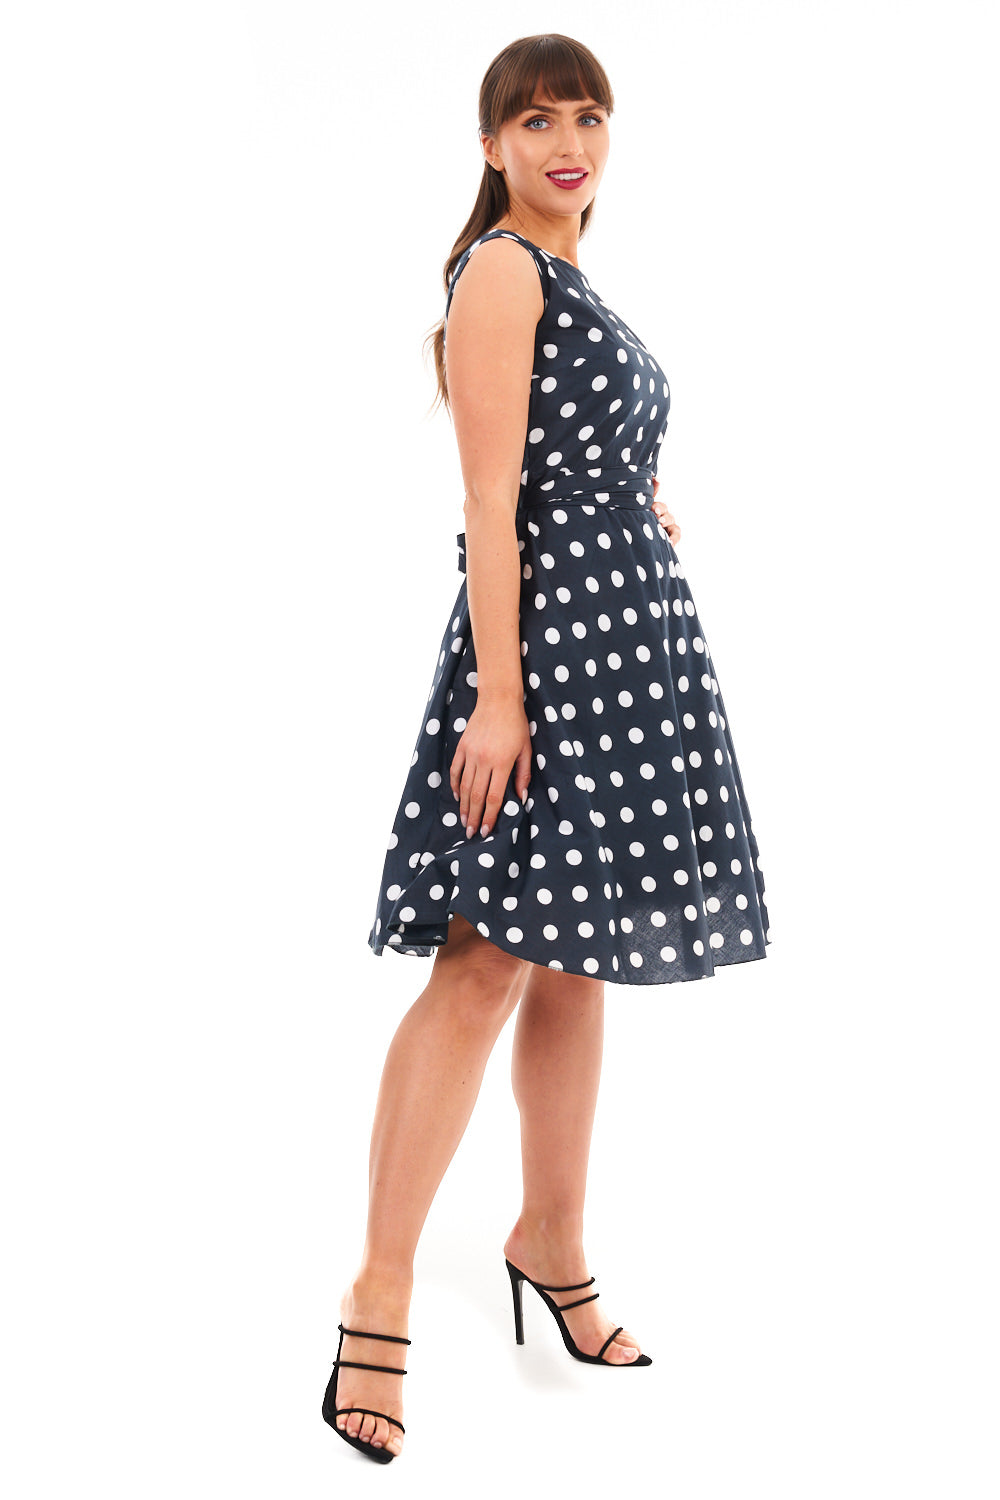 Ladies Retro Vintage 1940's / 1950s Inspired Polka Dot Dress in Navy